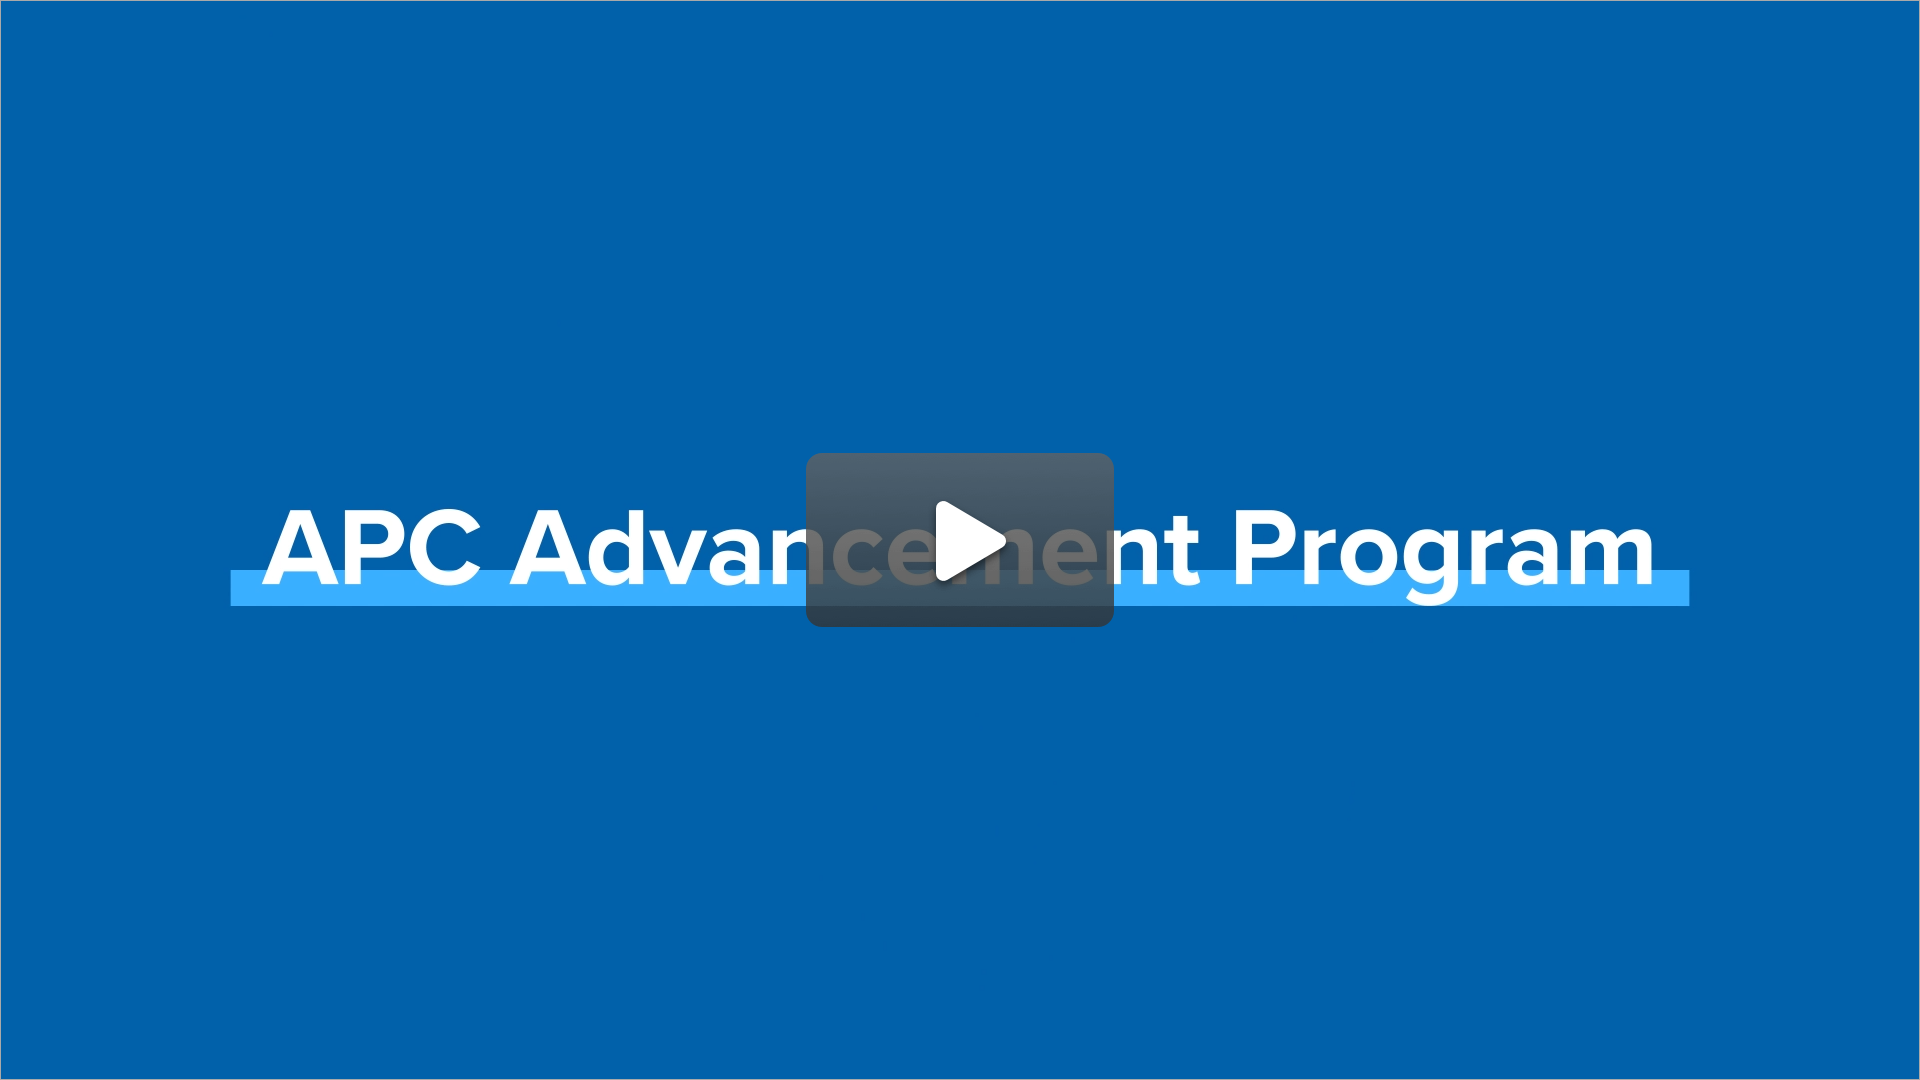 Anna Huneycutt - APC Advancement Program